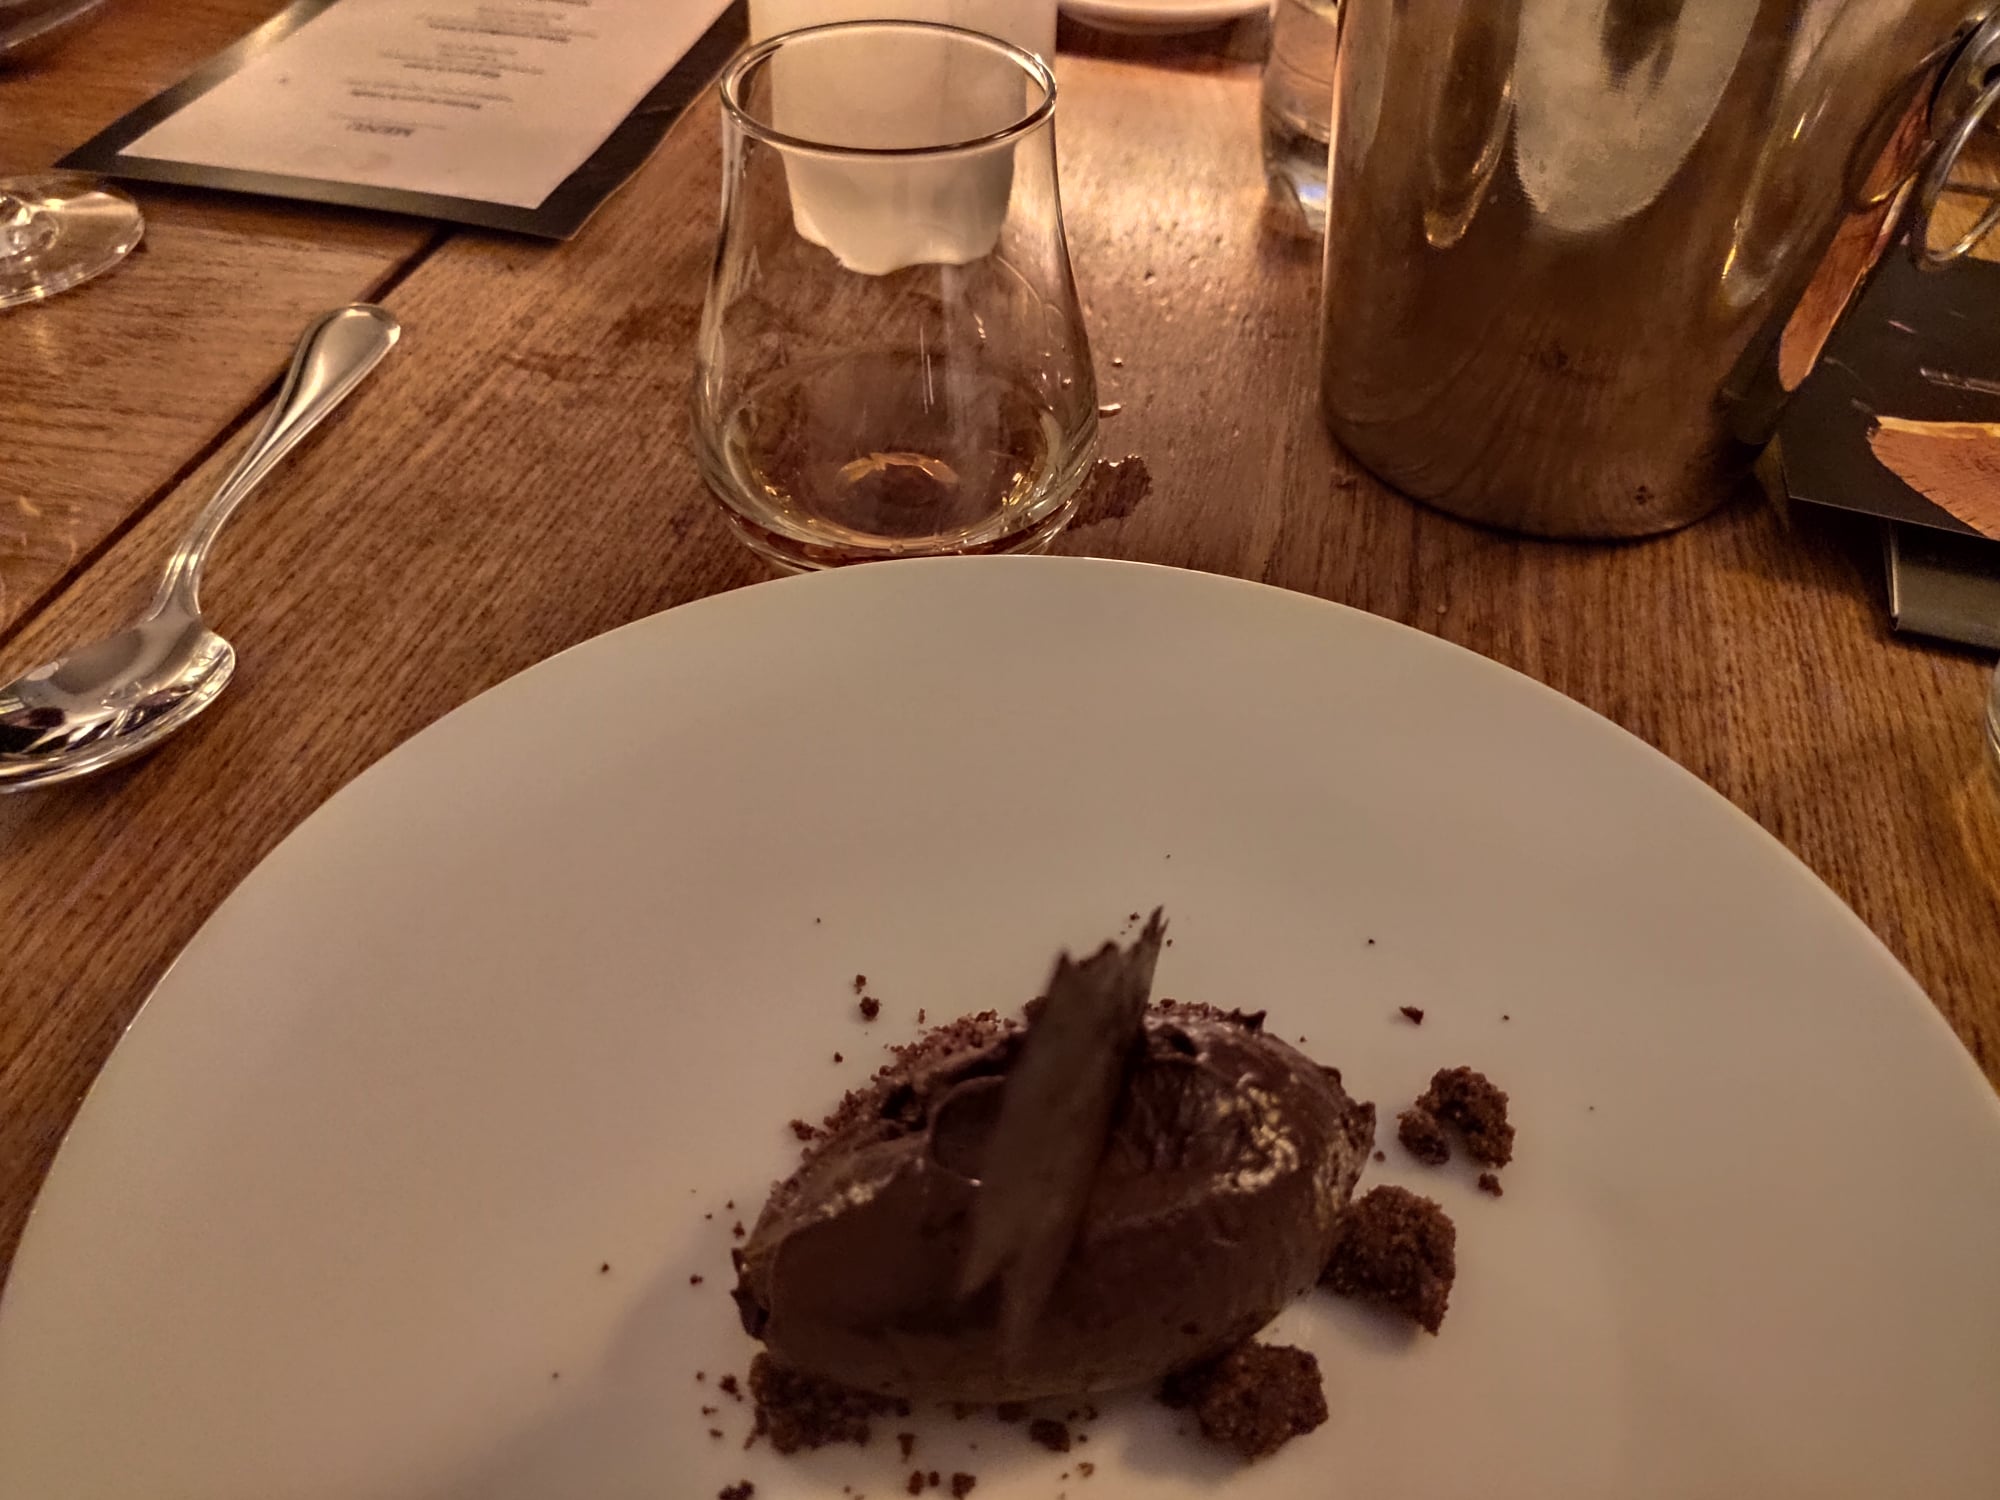 Ron Abuelo et crumble chocolat et choco-cacao du Mexique - Restaurant Biondi Paris 11ème